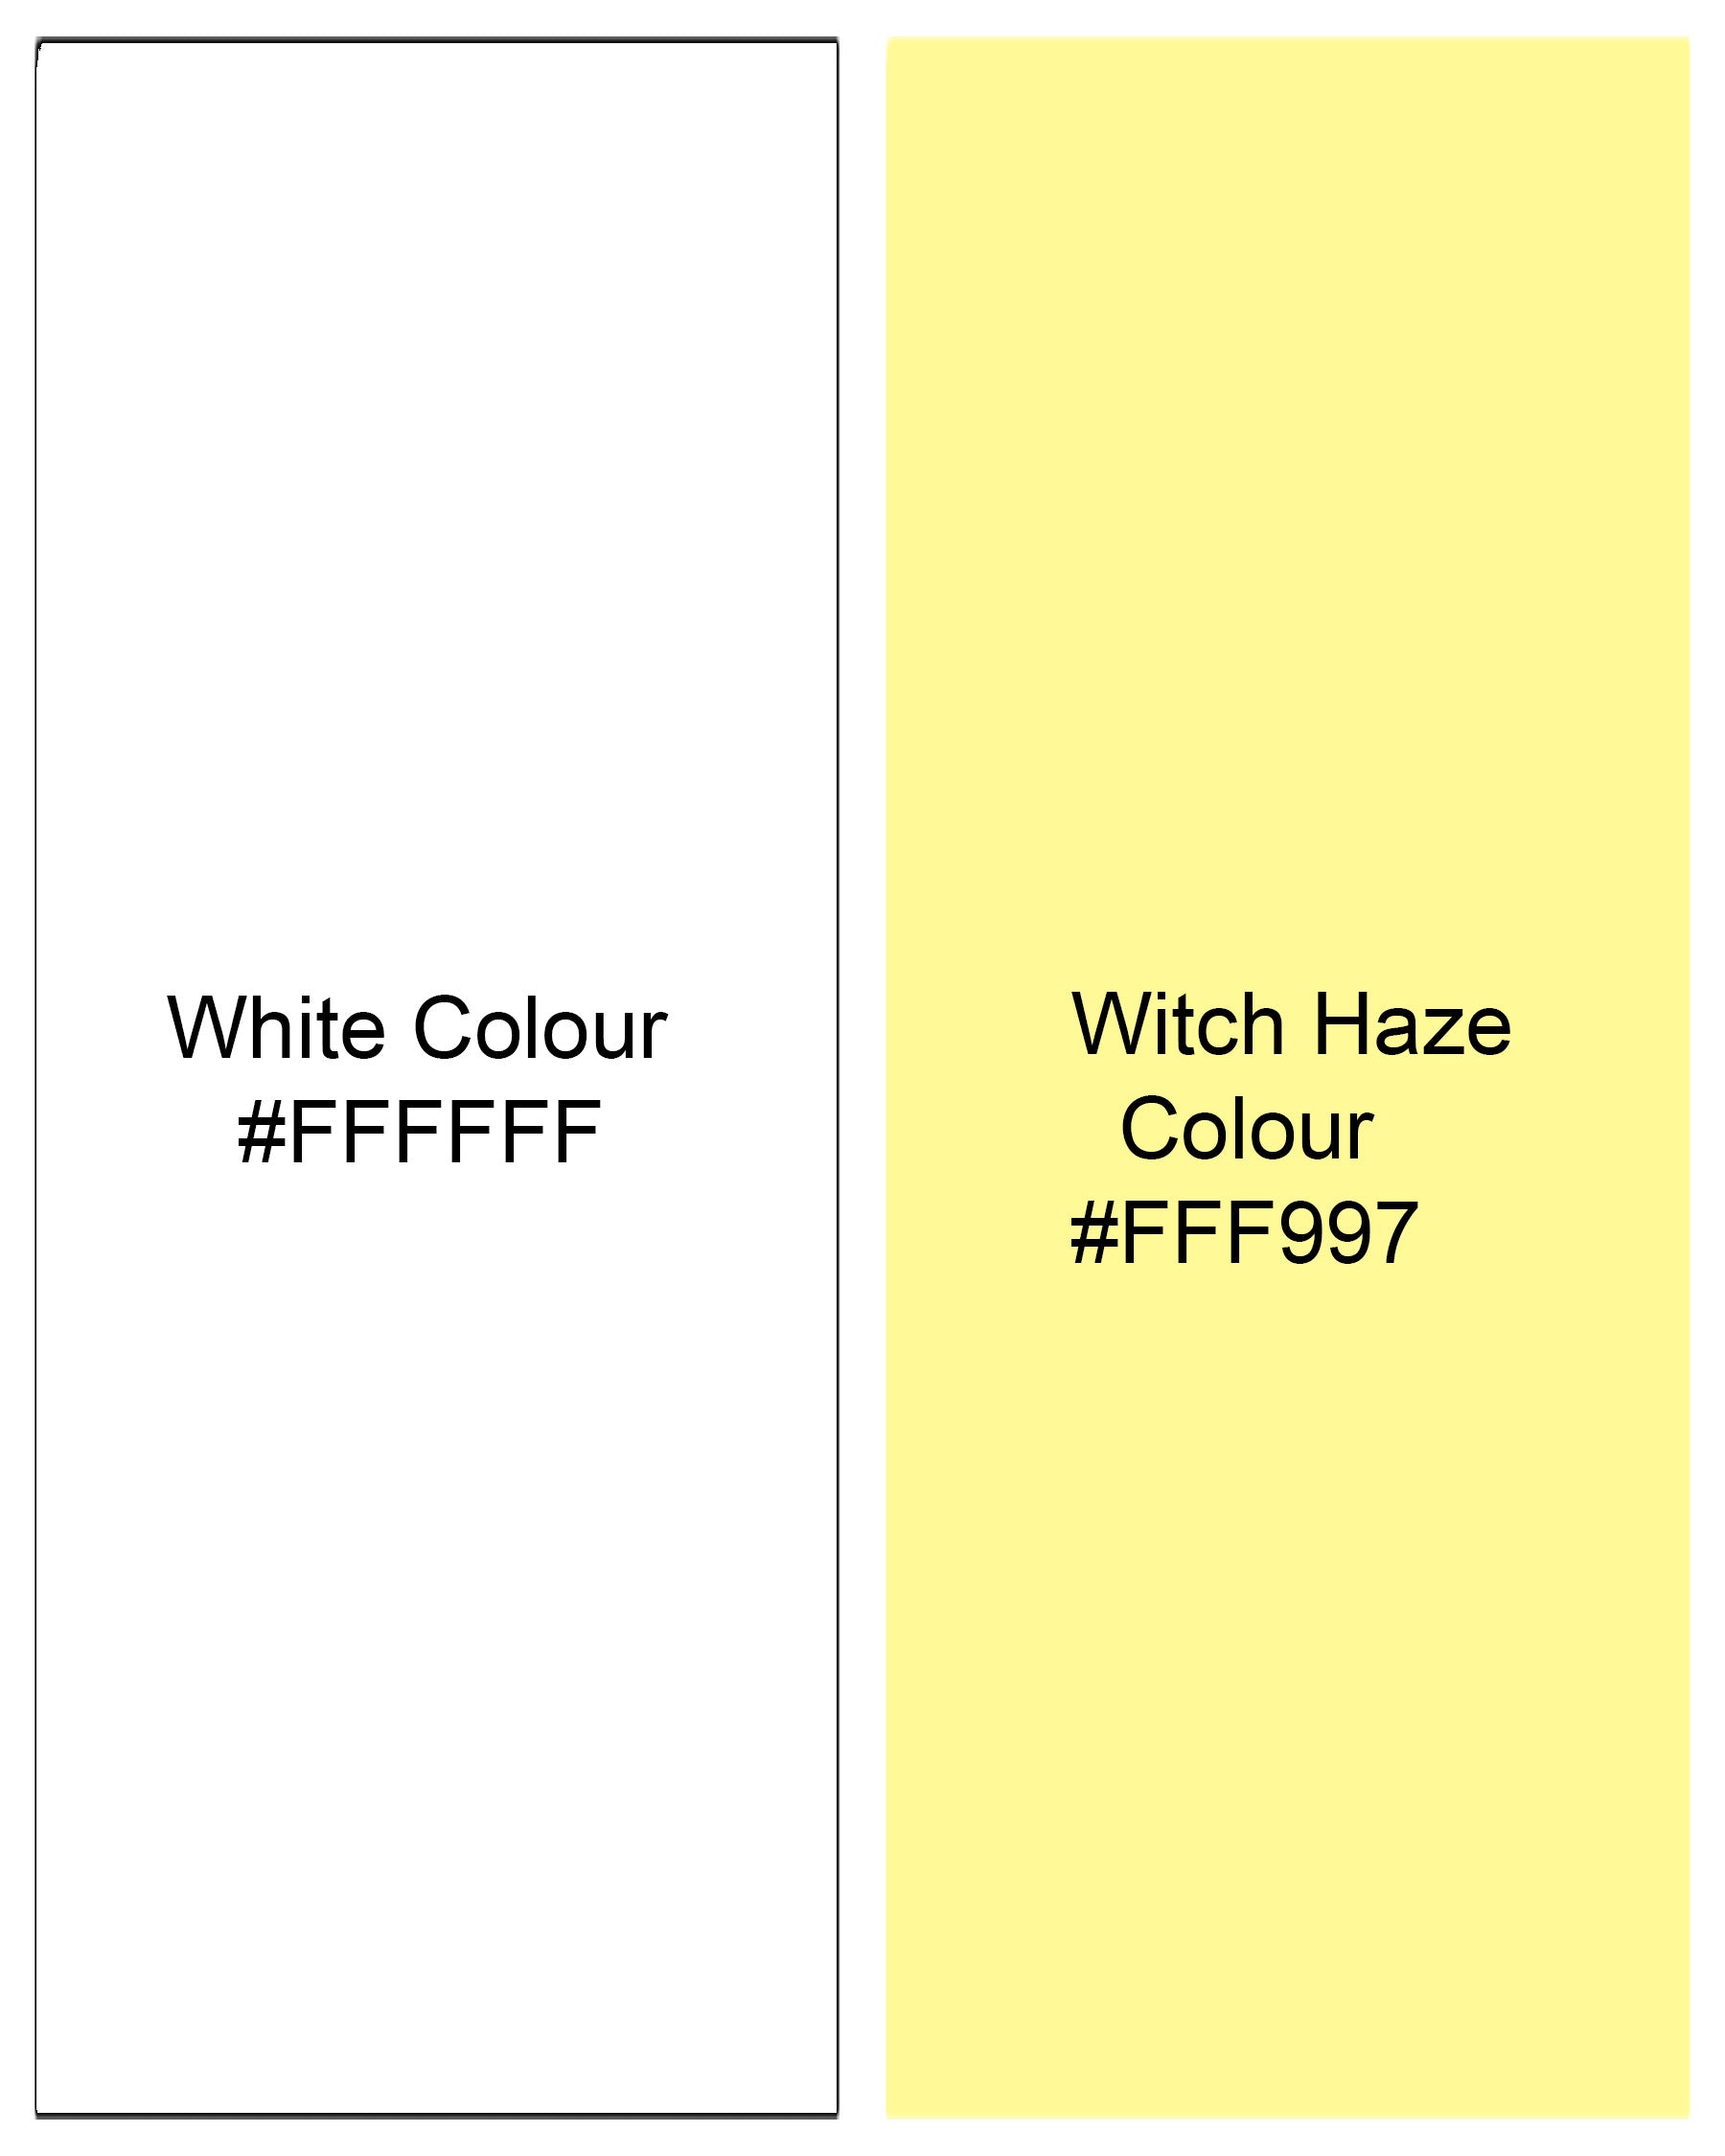 Witch Haze Yellow and White Checker Premium Cotton Shirt 7749-YL-38, 7749-YL-H-38, 7749-YL-39,7749-YL-H-39, 7749-YL-40, 7749-YL-H-40, 7749-YL-42, 7749-YL-H-42, 7749-YL-44, 7749-YL-H-44, 7749-YL-46, 7749-YL-H-46, 7749-YL-48, 7749-YL-H-48, 7749-YL-50, 7749-YL-H-50, 7749-YL-52, 7749-YL-H-52